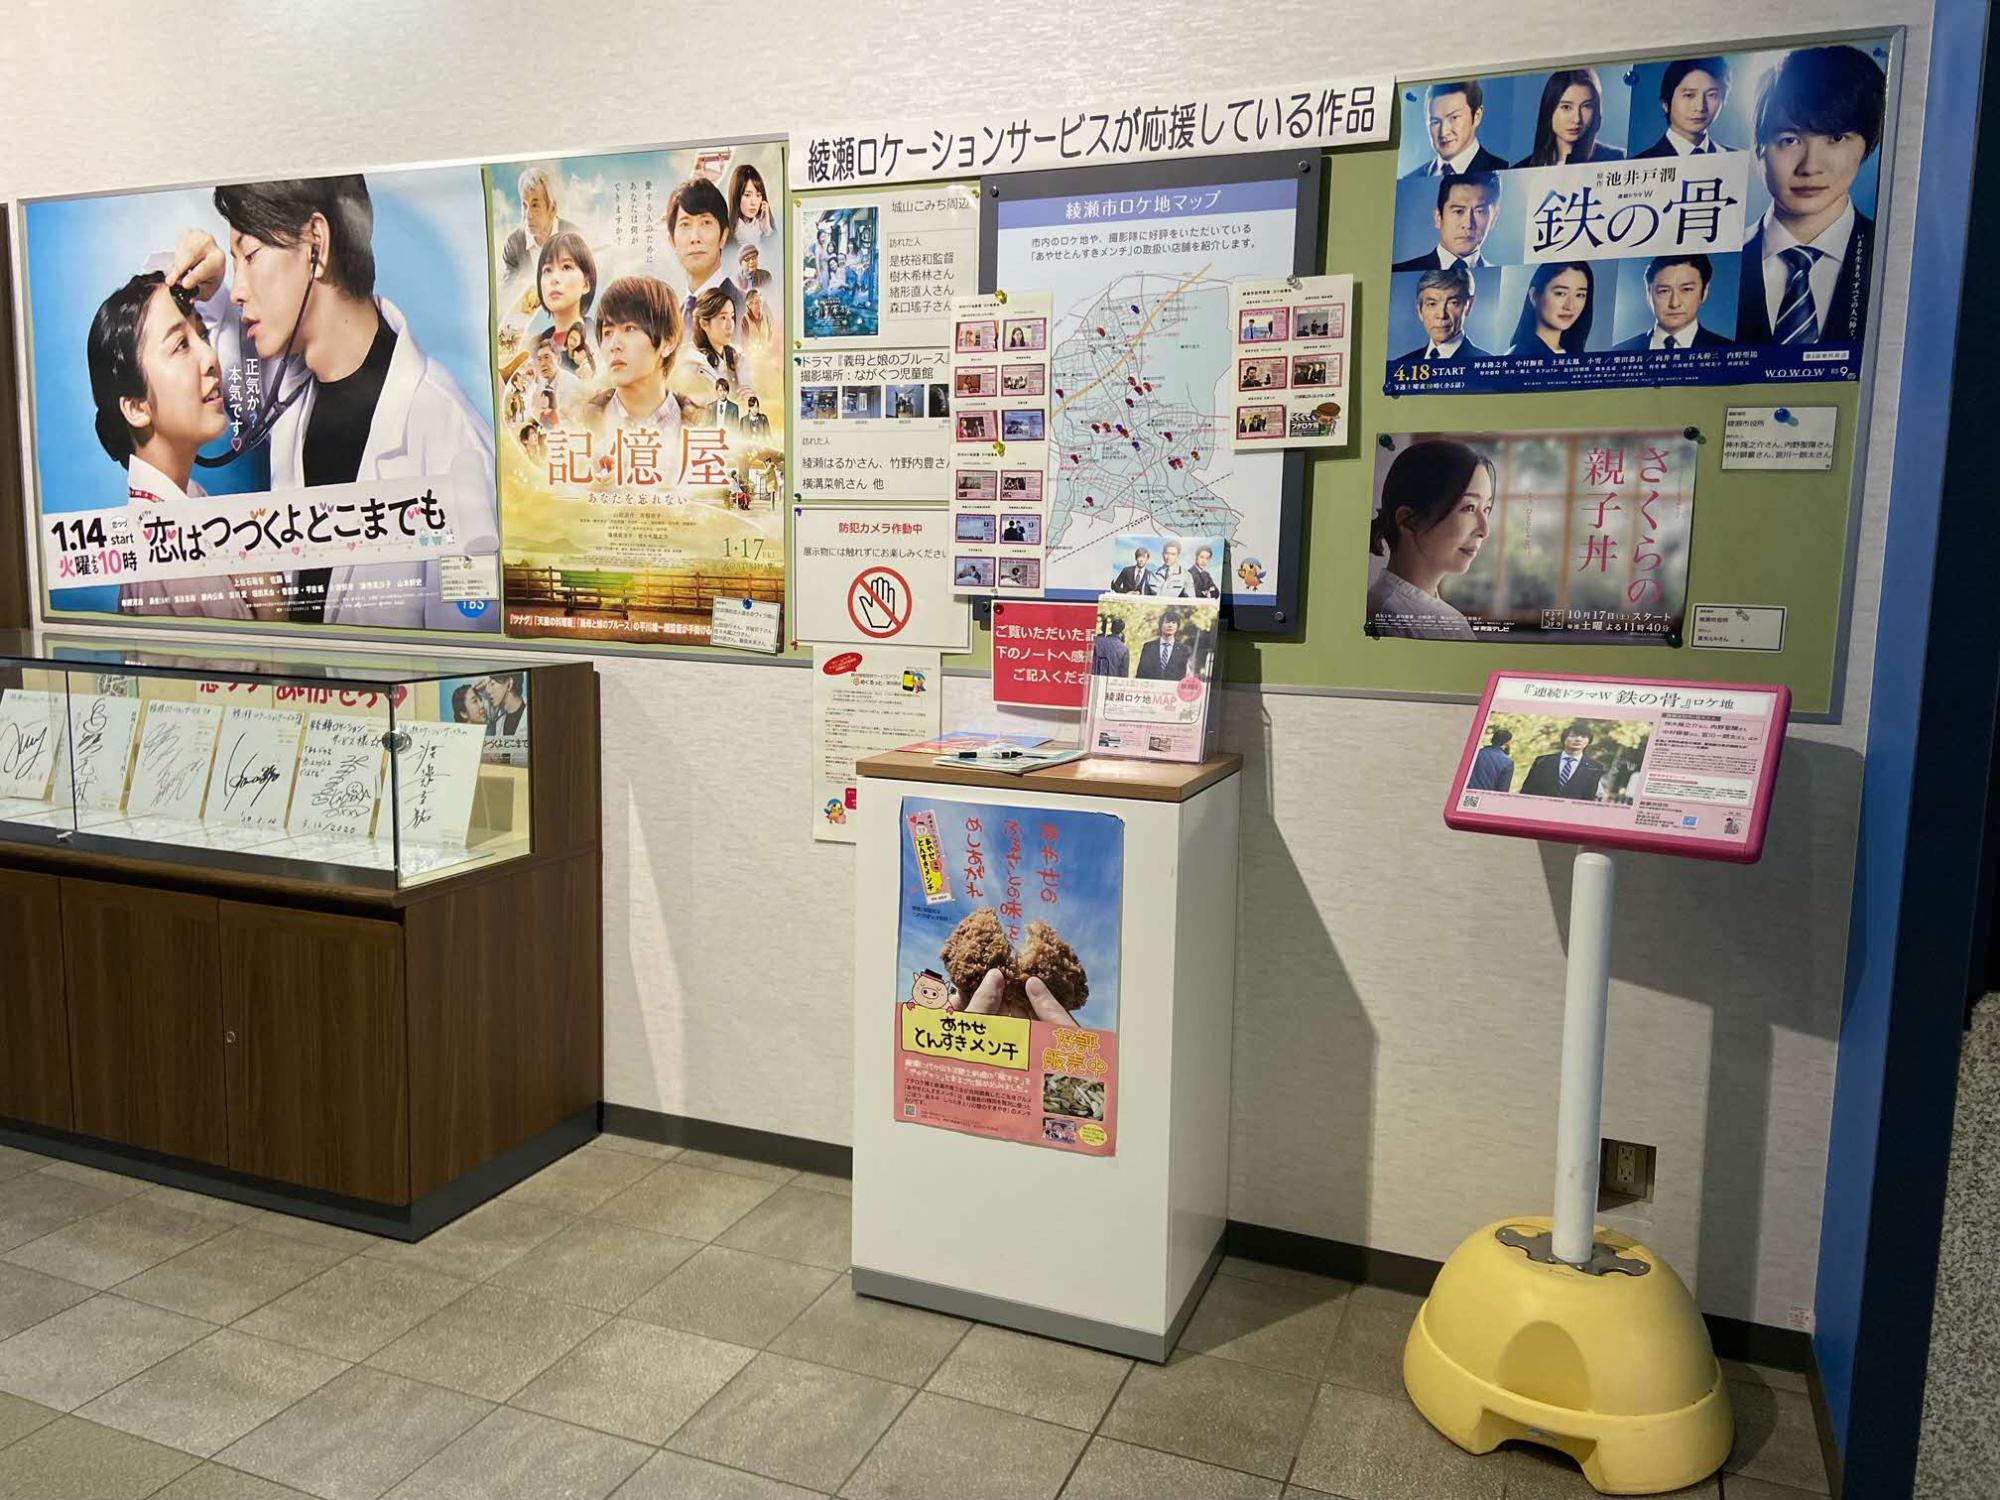 綾瀬ロケーションサービスが応援している作品のポスターが貼ってある掲示版前に置かれているロケ地看板が設置されている様子の写真